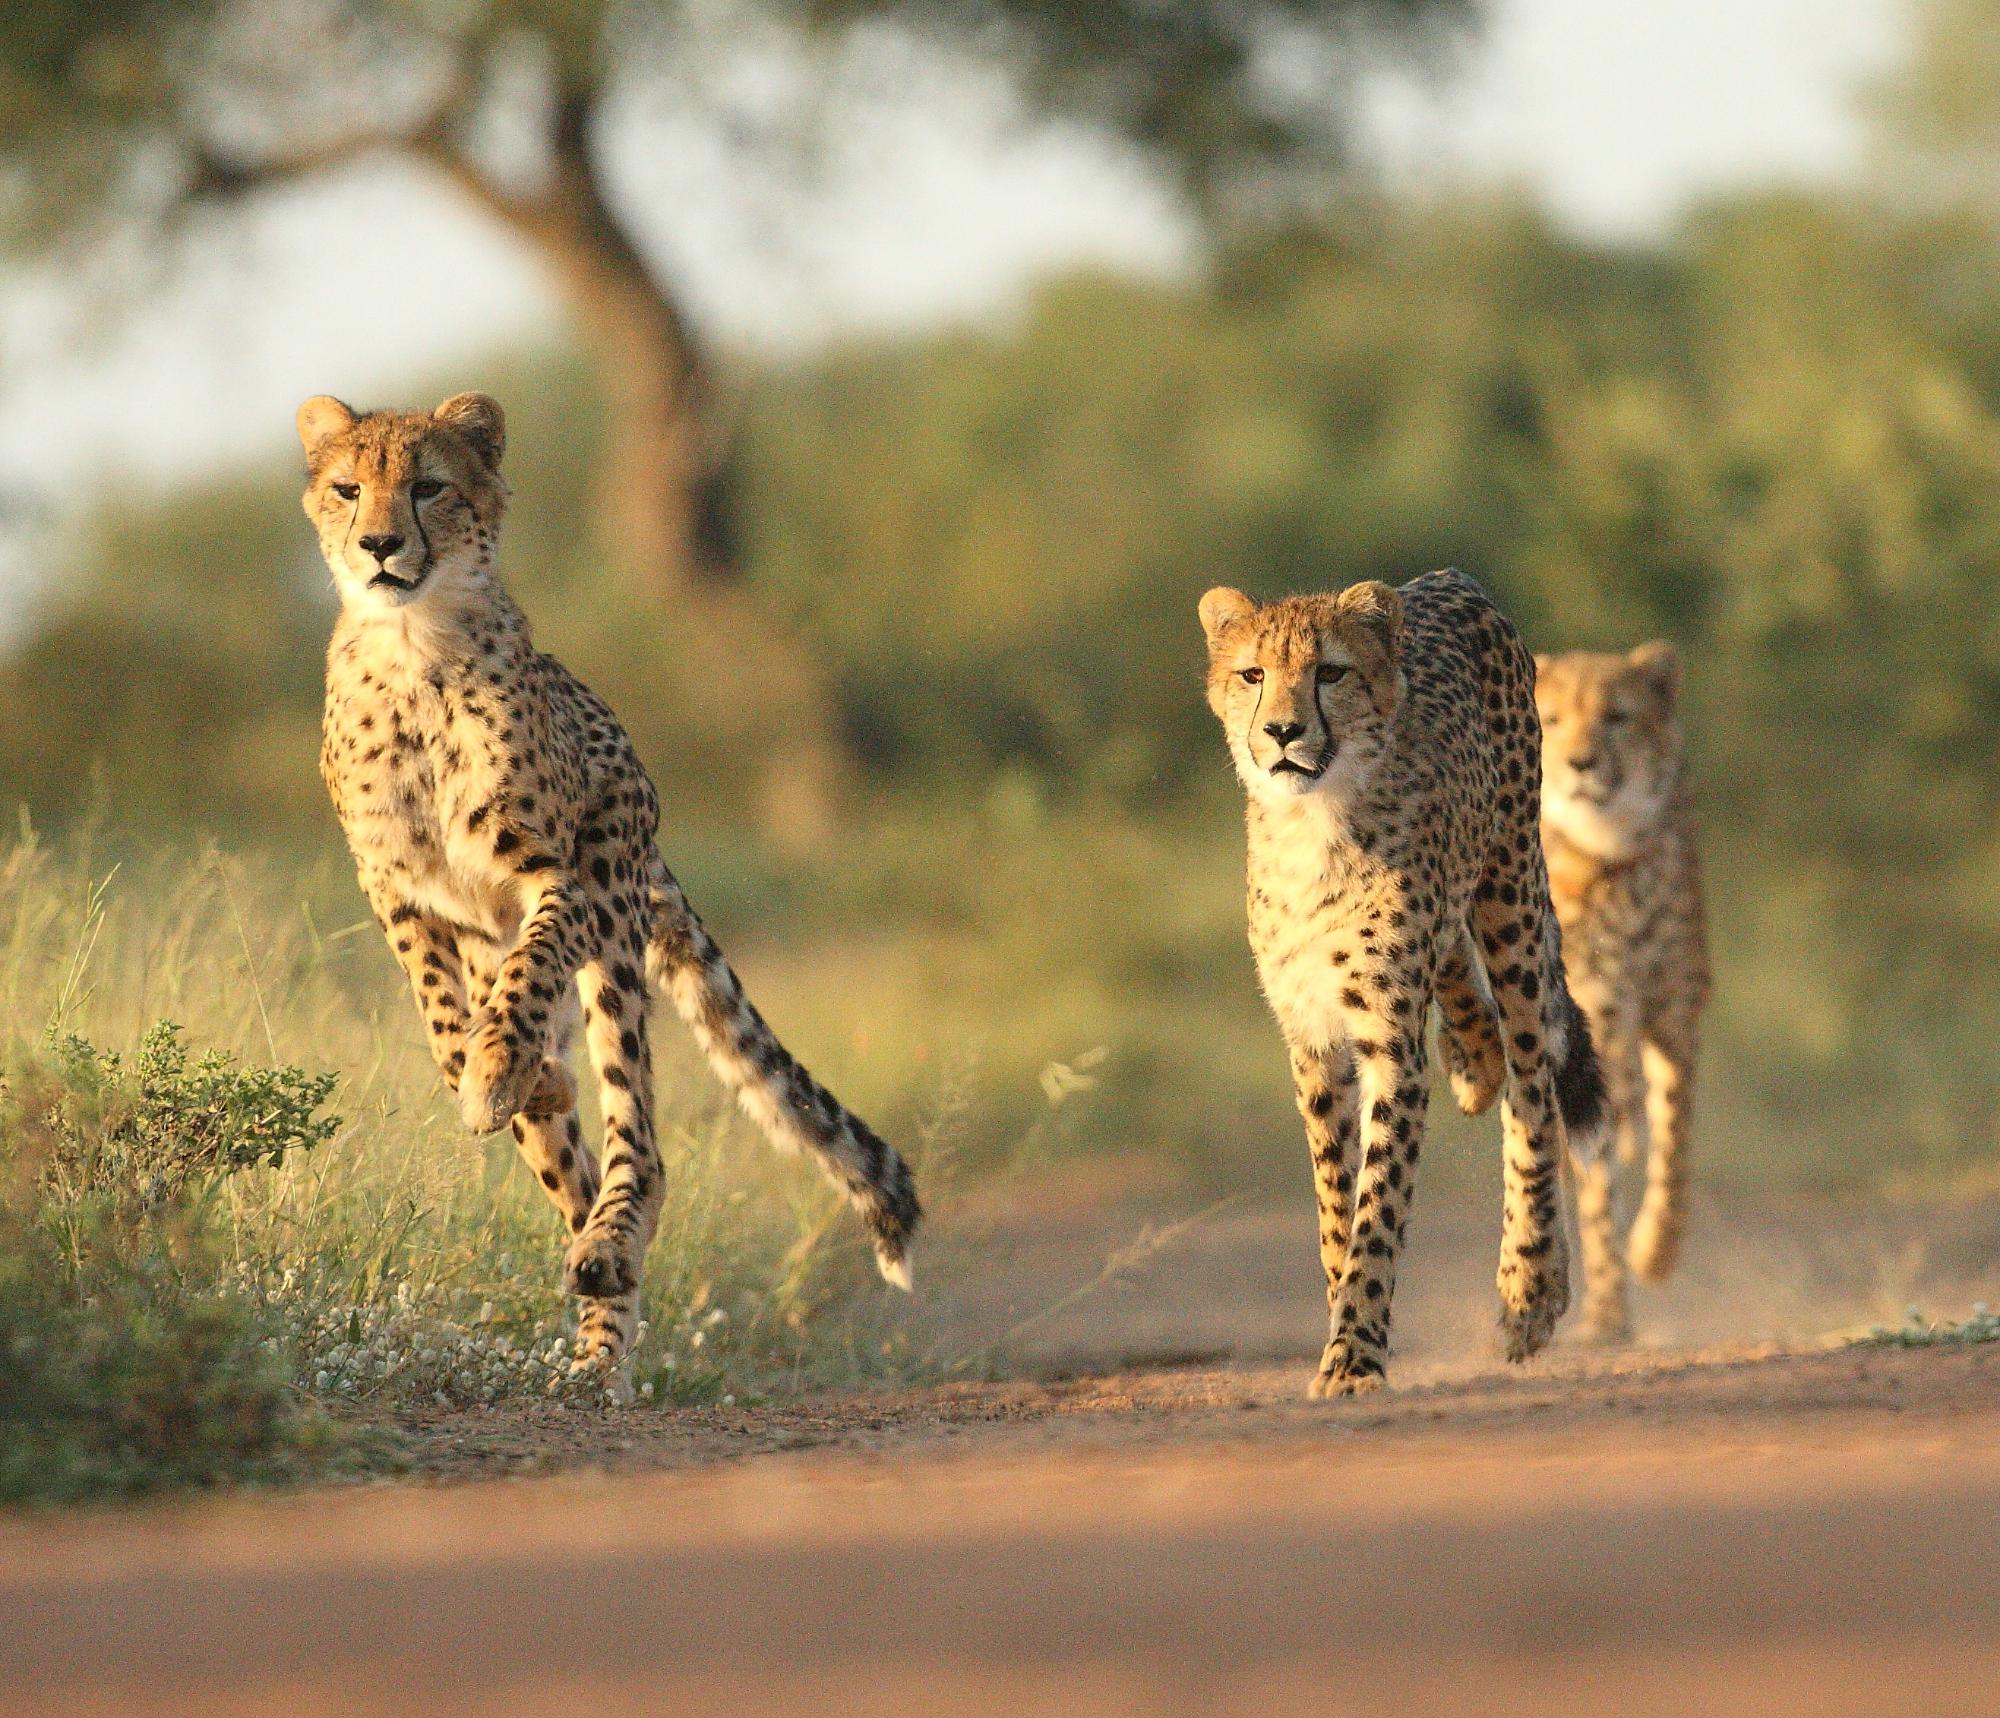 Three Cheetahs running